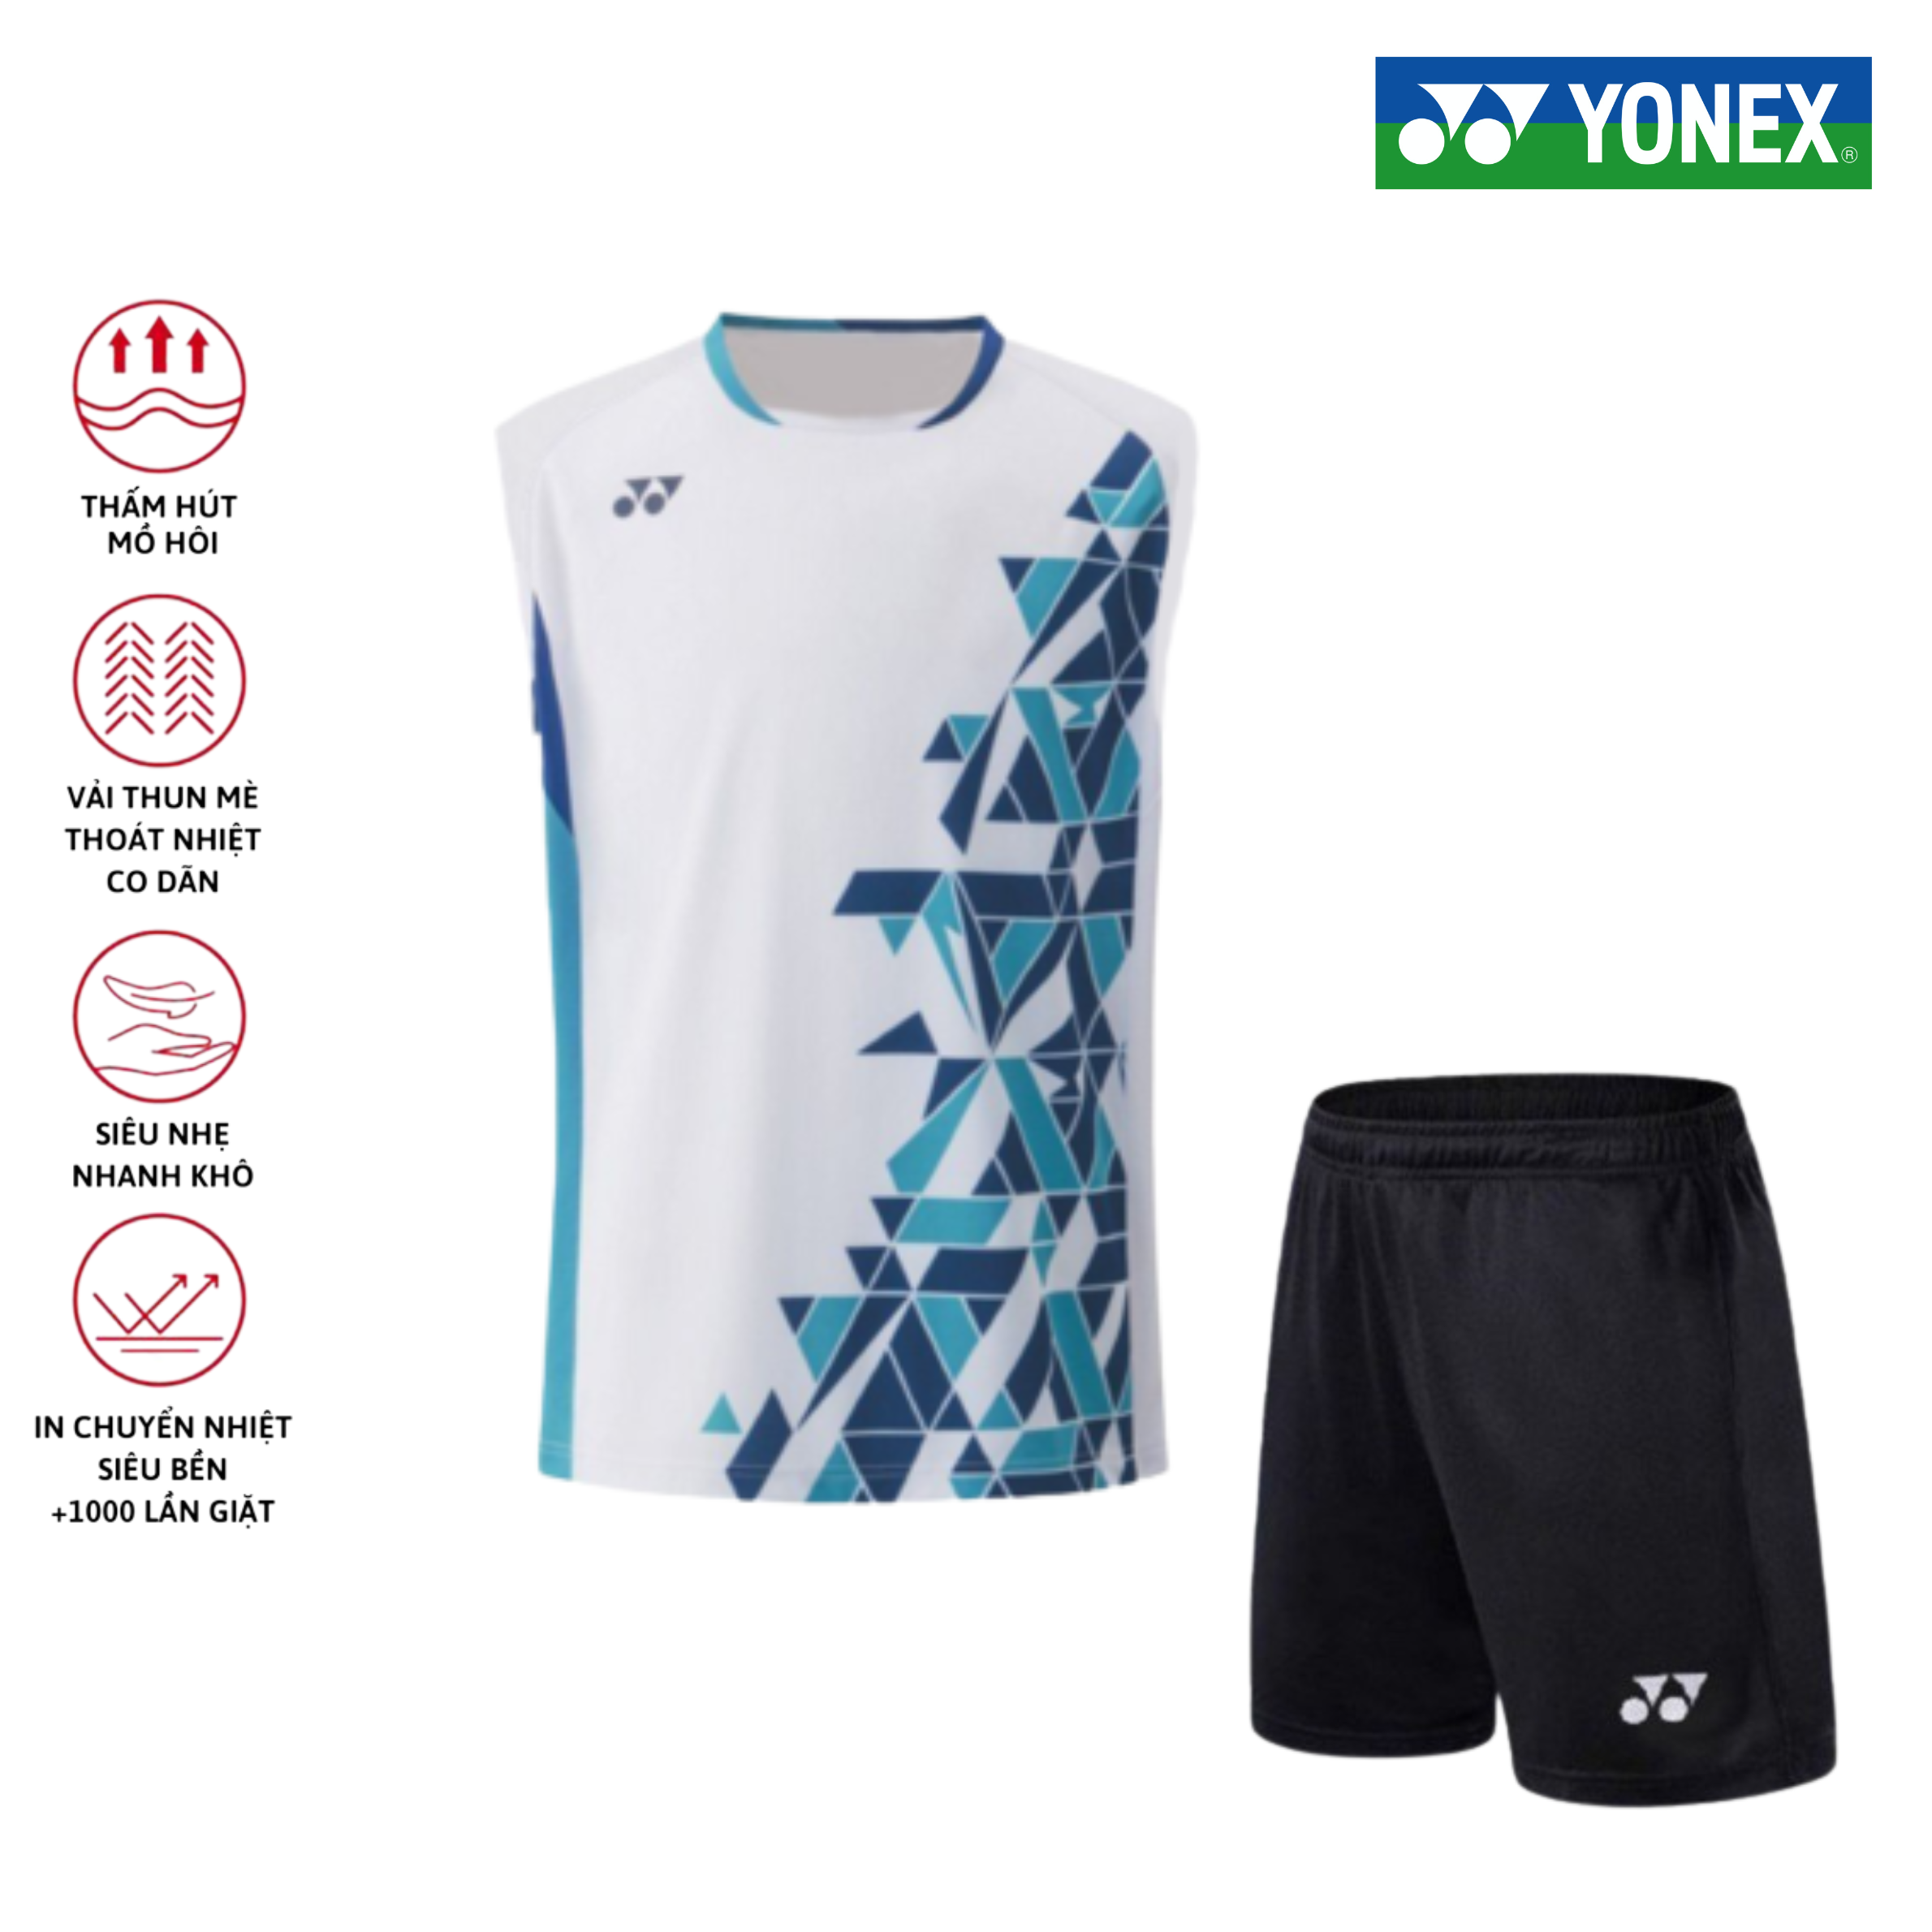 Áo cầu lông, quần cầu lông Yonex chuyên nghiệp mới nhất sử dụng tập luyện và thi đấu cầu lông A256